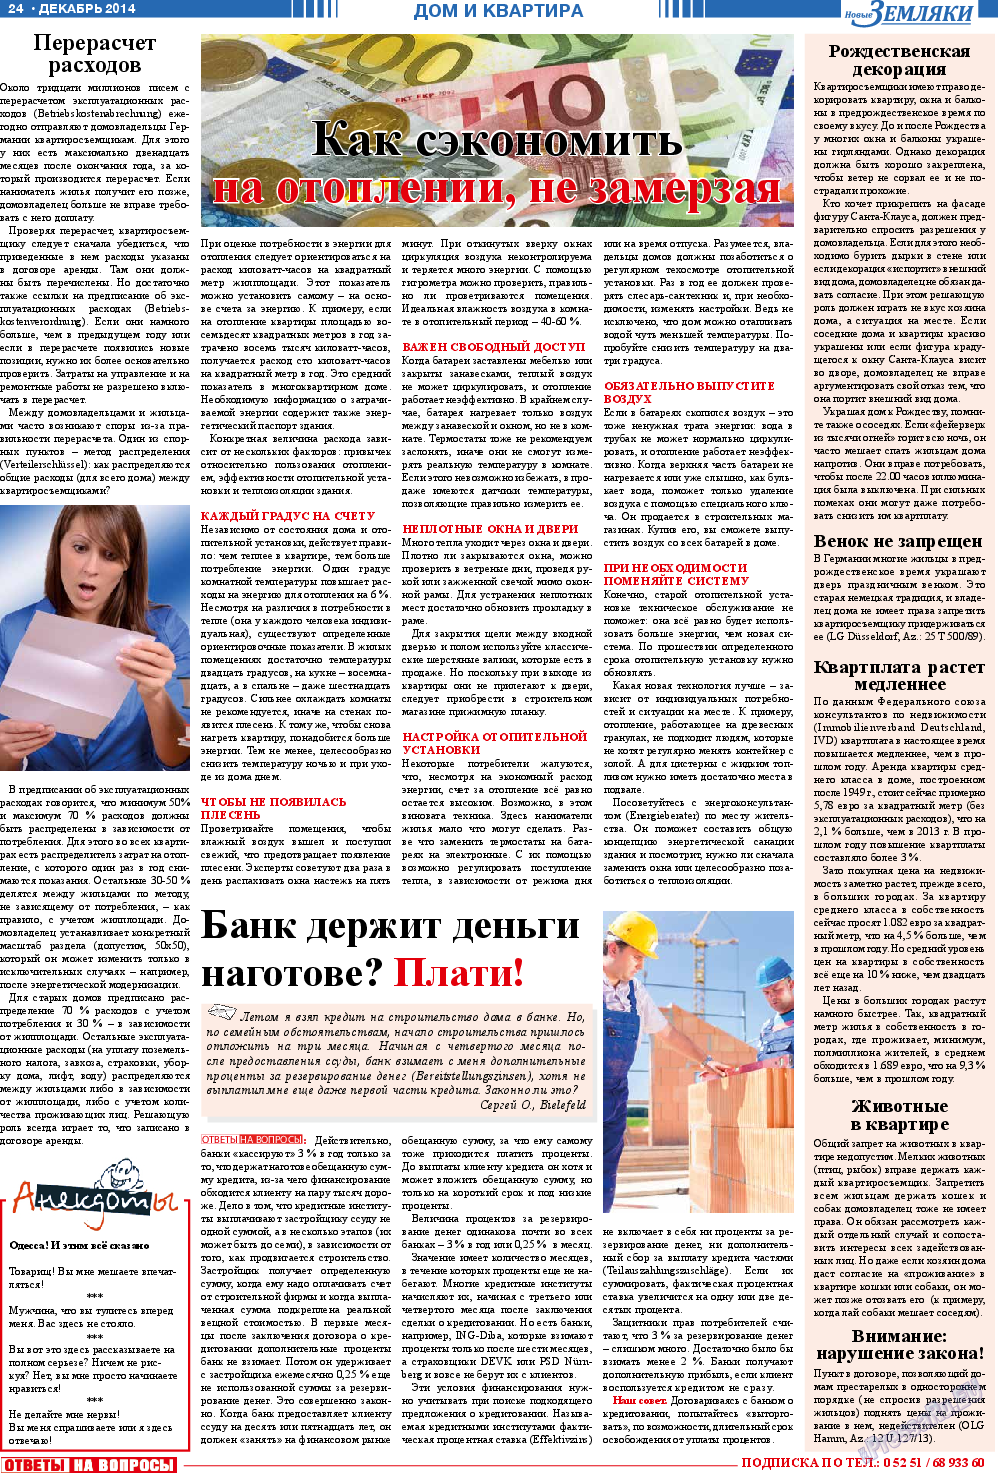 Новые Земляки, газета. 2014 №12 стр.24